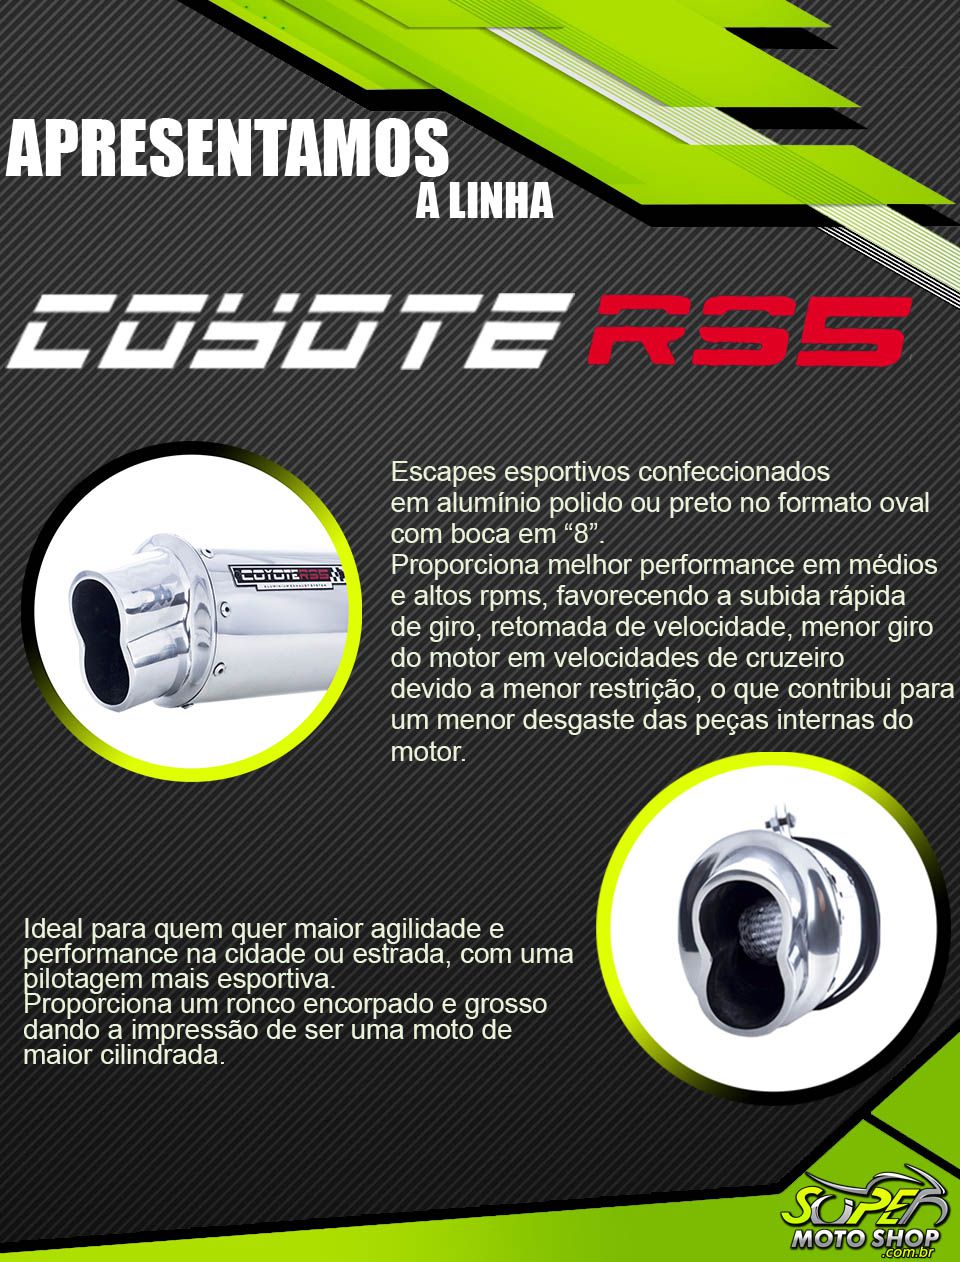 Escape / Ponteira Coyote RS5 Boca 8 Aluminio Oval - CG 125 Fan 2009 até 2013 & 2014 em Diante - Honda